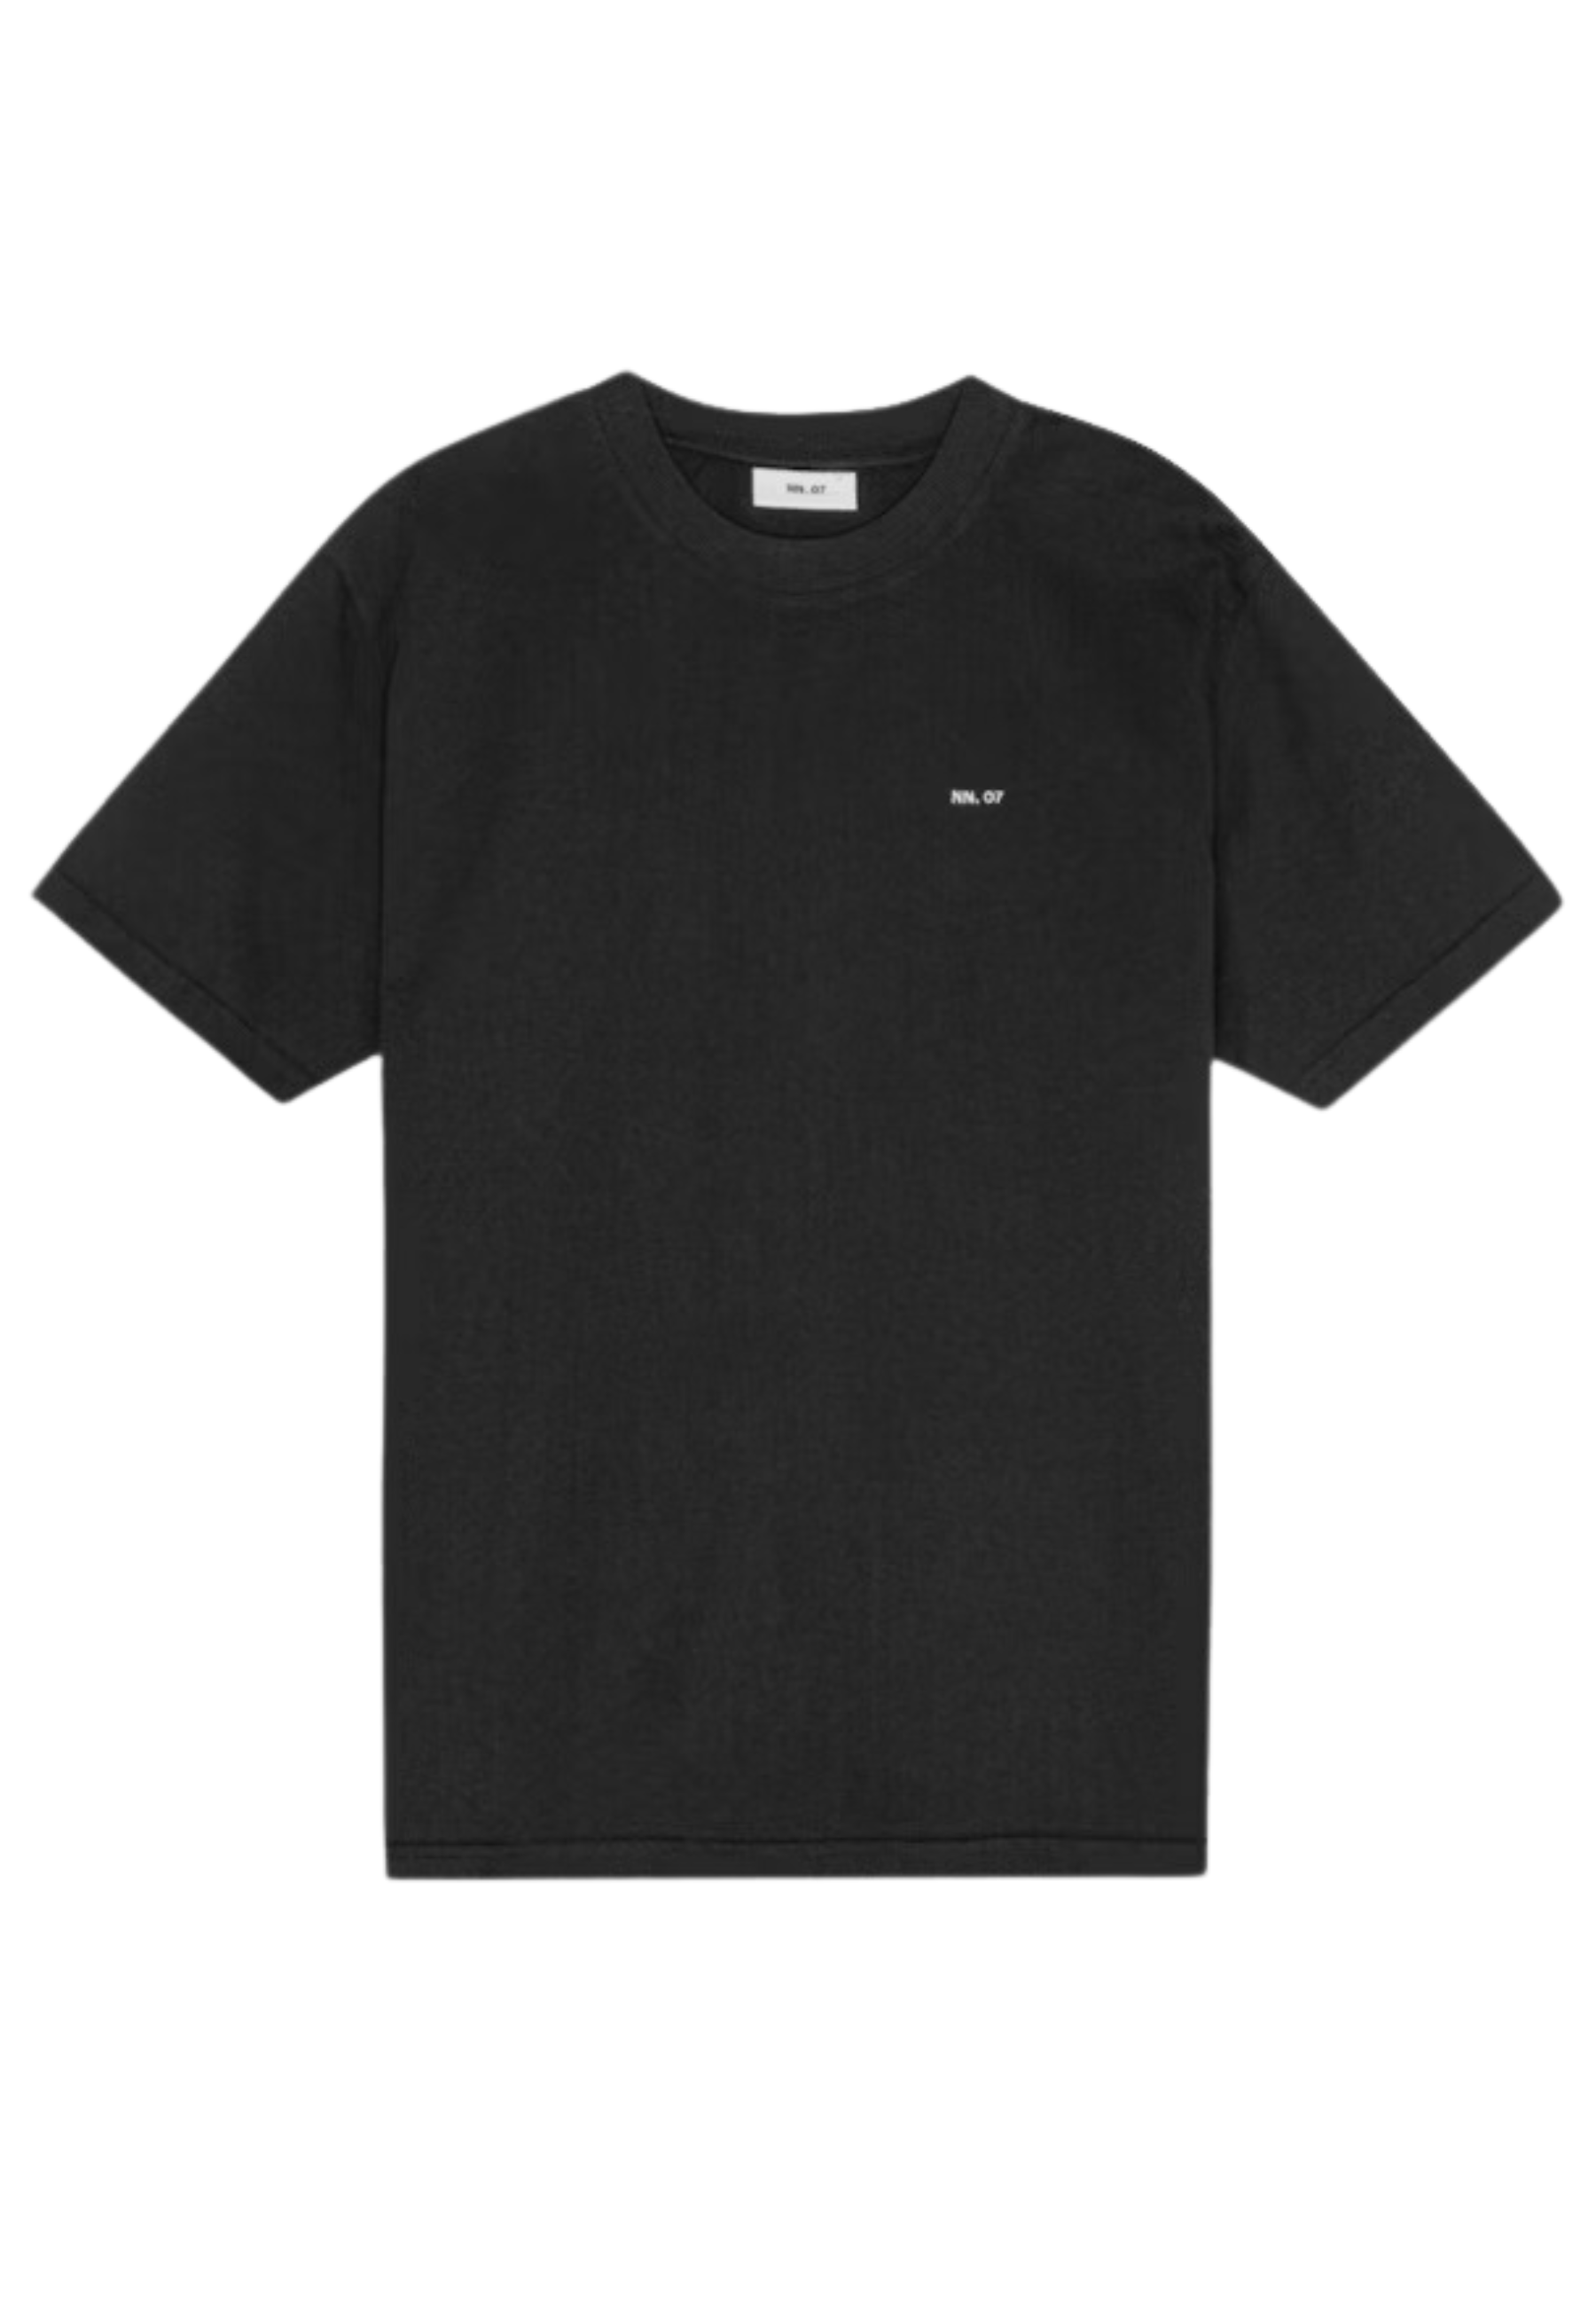 Shirt Zwart Adam emb t-shirts zwart